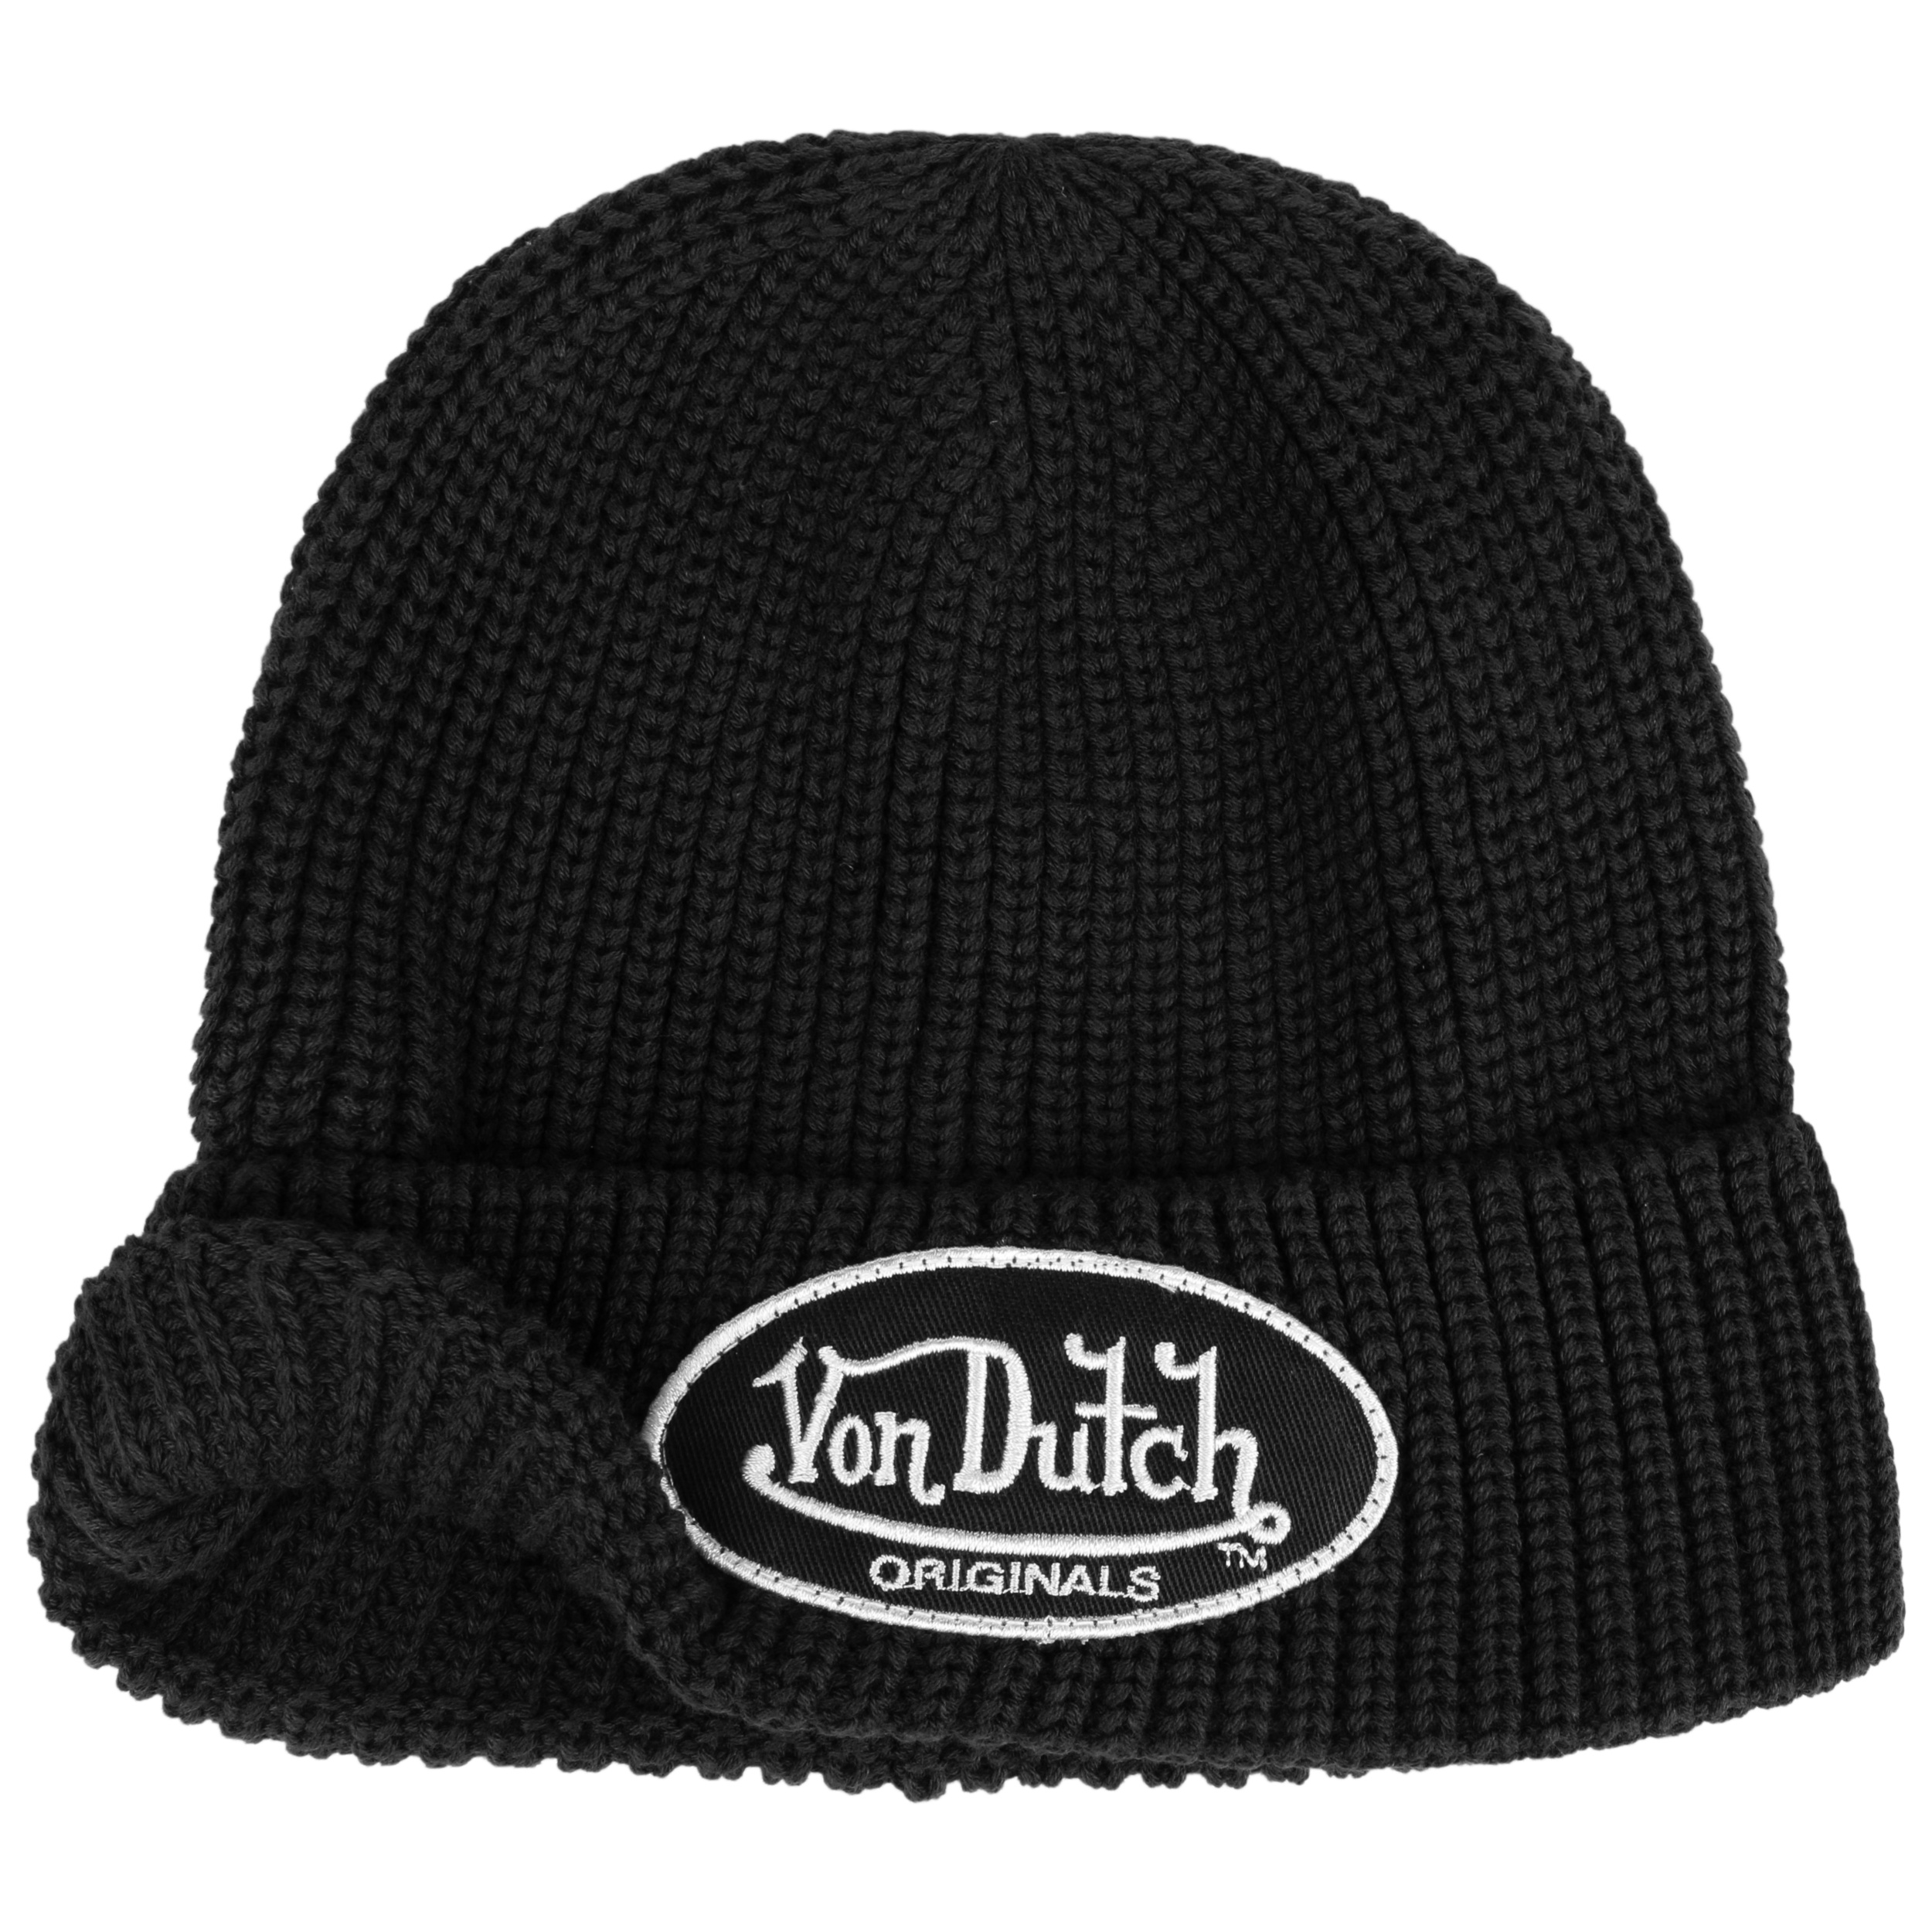 Von Dutch ビーニー 定番 - 帽子